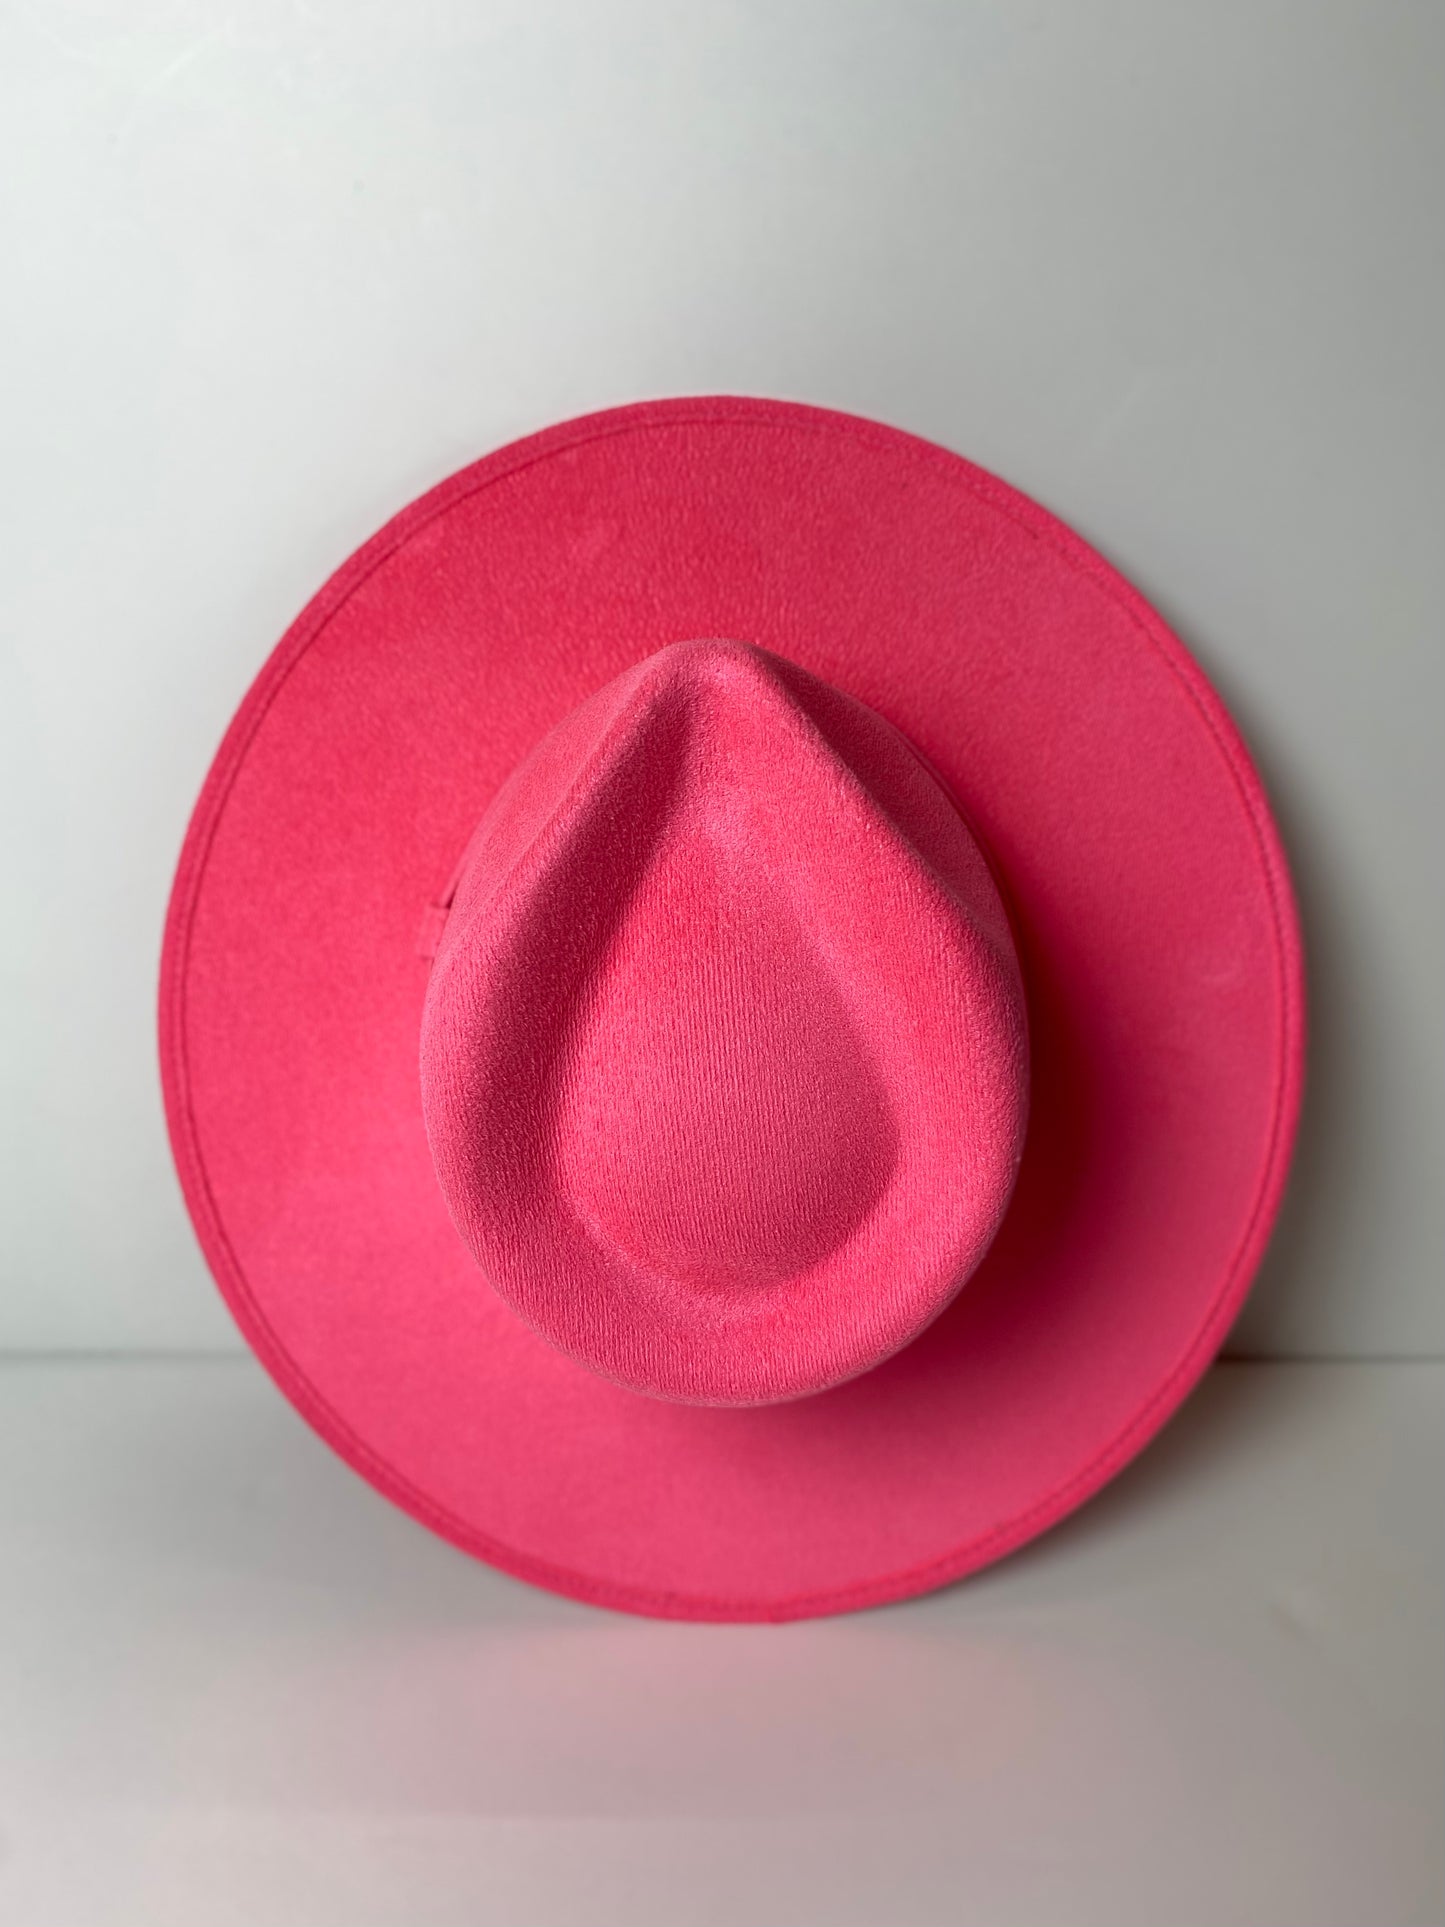 Vegan Suede Rancher Hat- Barbie Pink